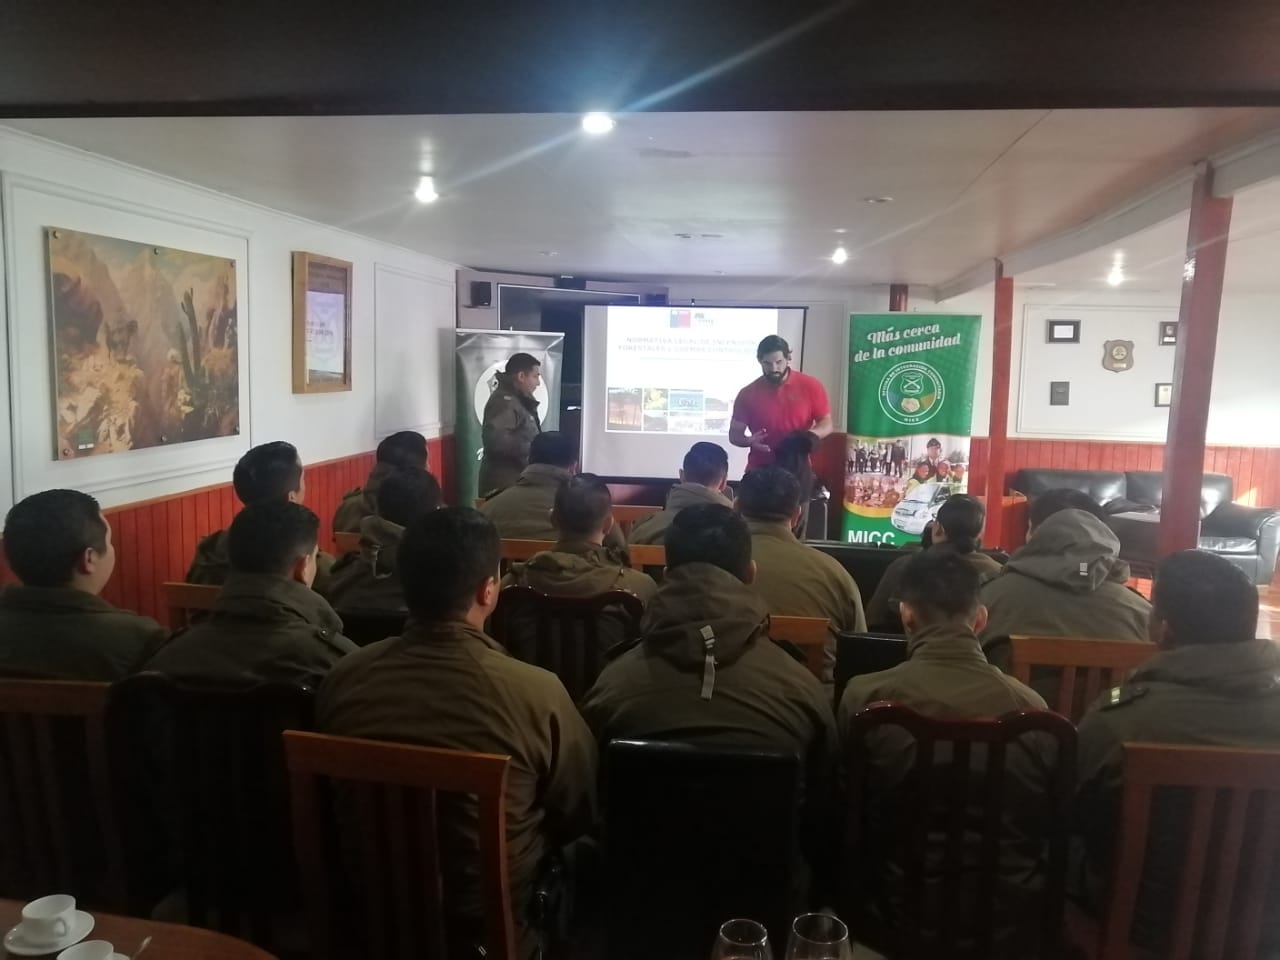 Personal de Carabineros se capacita en prevención de incendios forestales: participaron efectivos de retenes de Río Seco, Agua Fresca, Tehuelche y 1a Comisaría de Punta Arenas